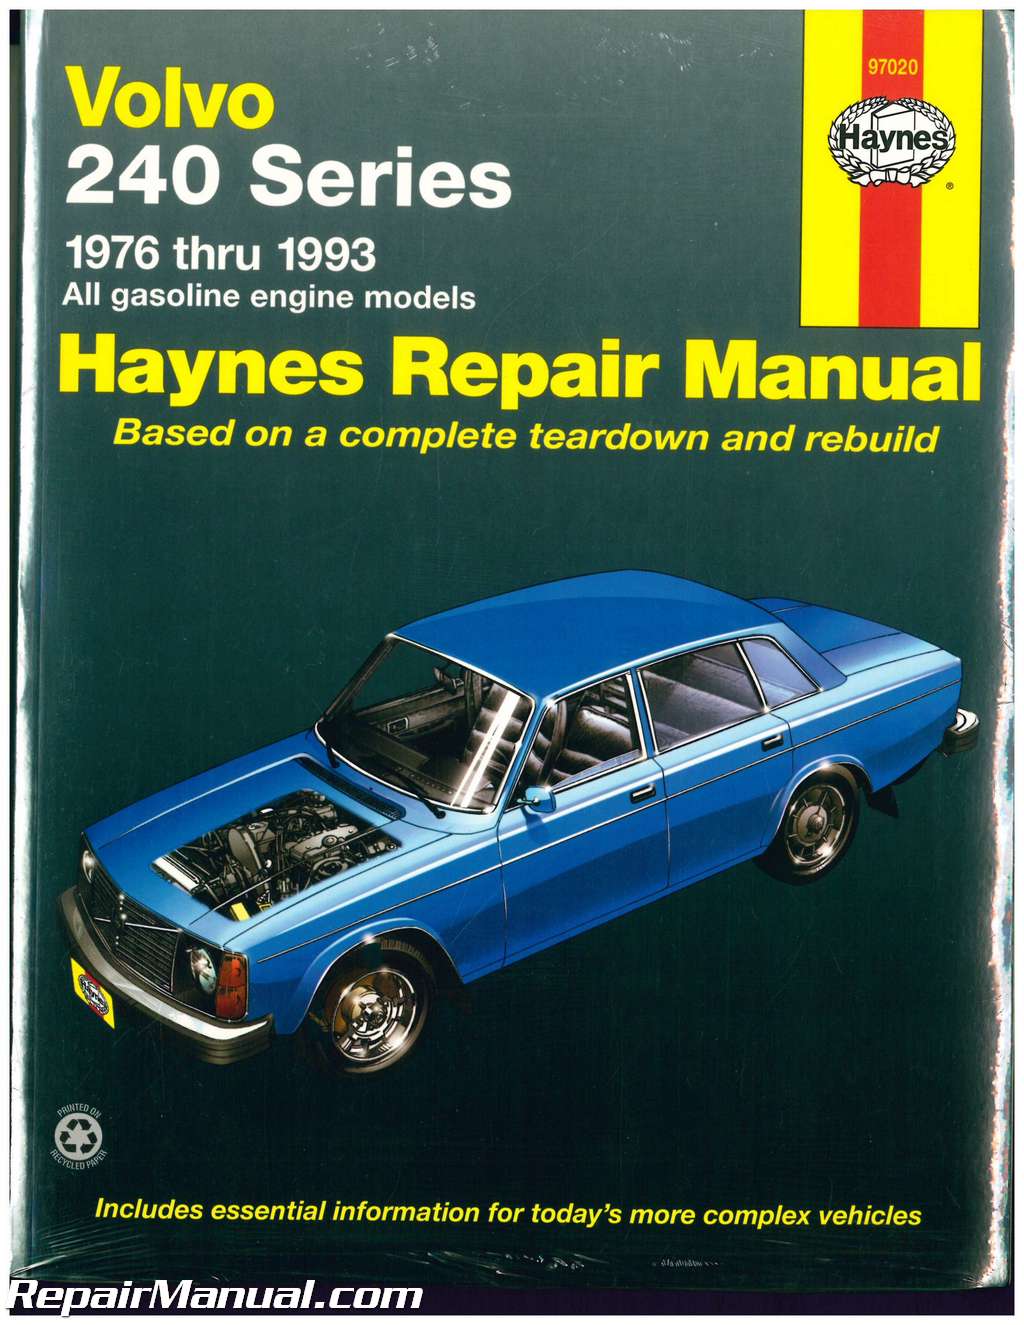 Haynes Auto Manuals